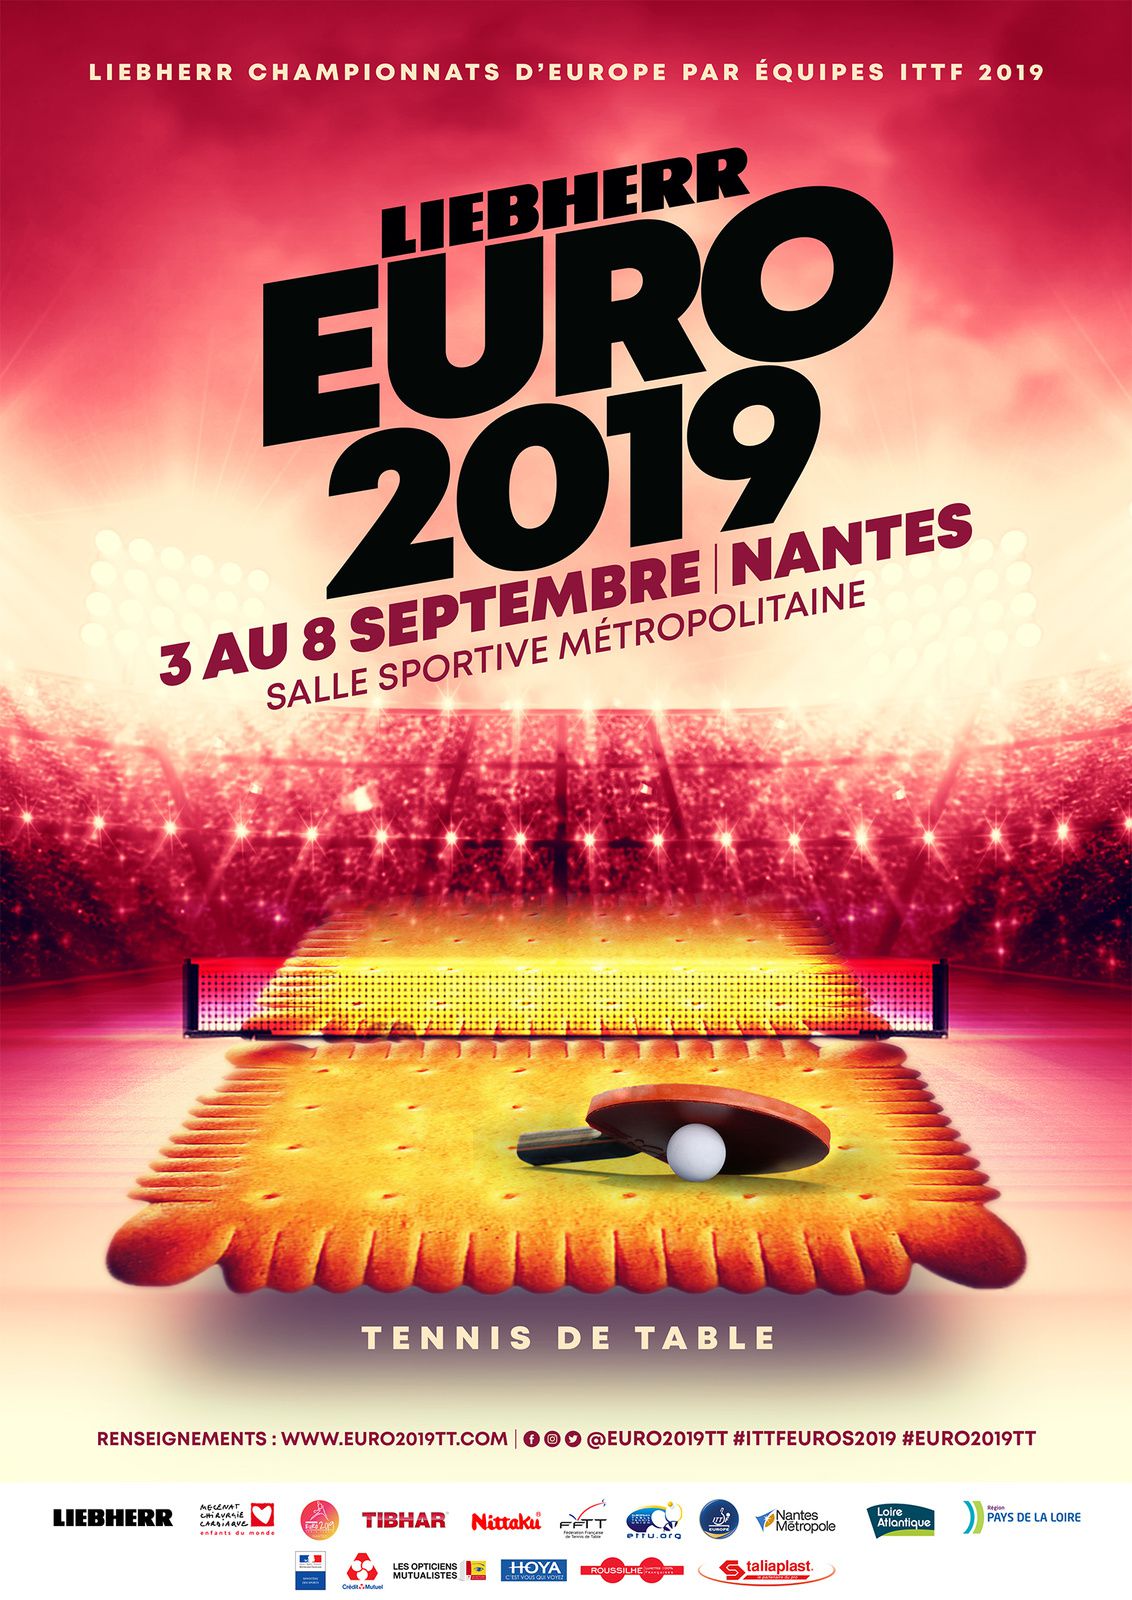 Les championnats d'Europe de tennis de table par équipes à Nantes 2019  (Liebherr Euro 2019) - LE BLOG DE TENNIS DE TABLE